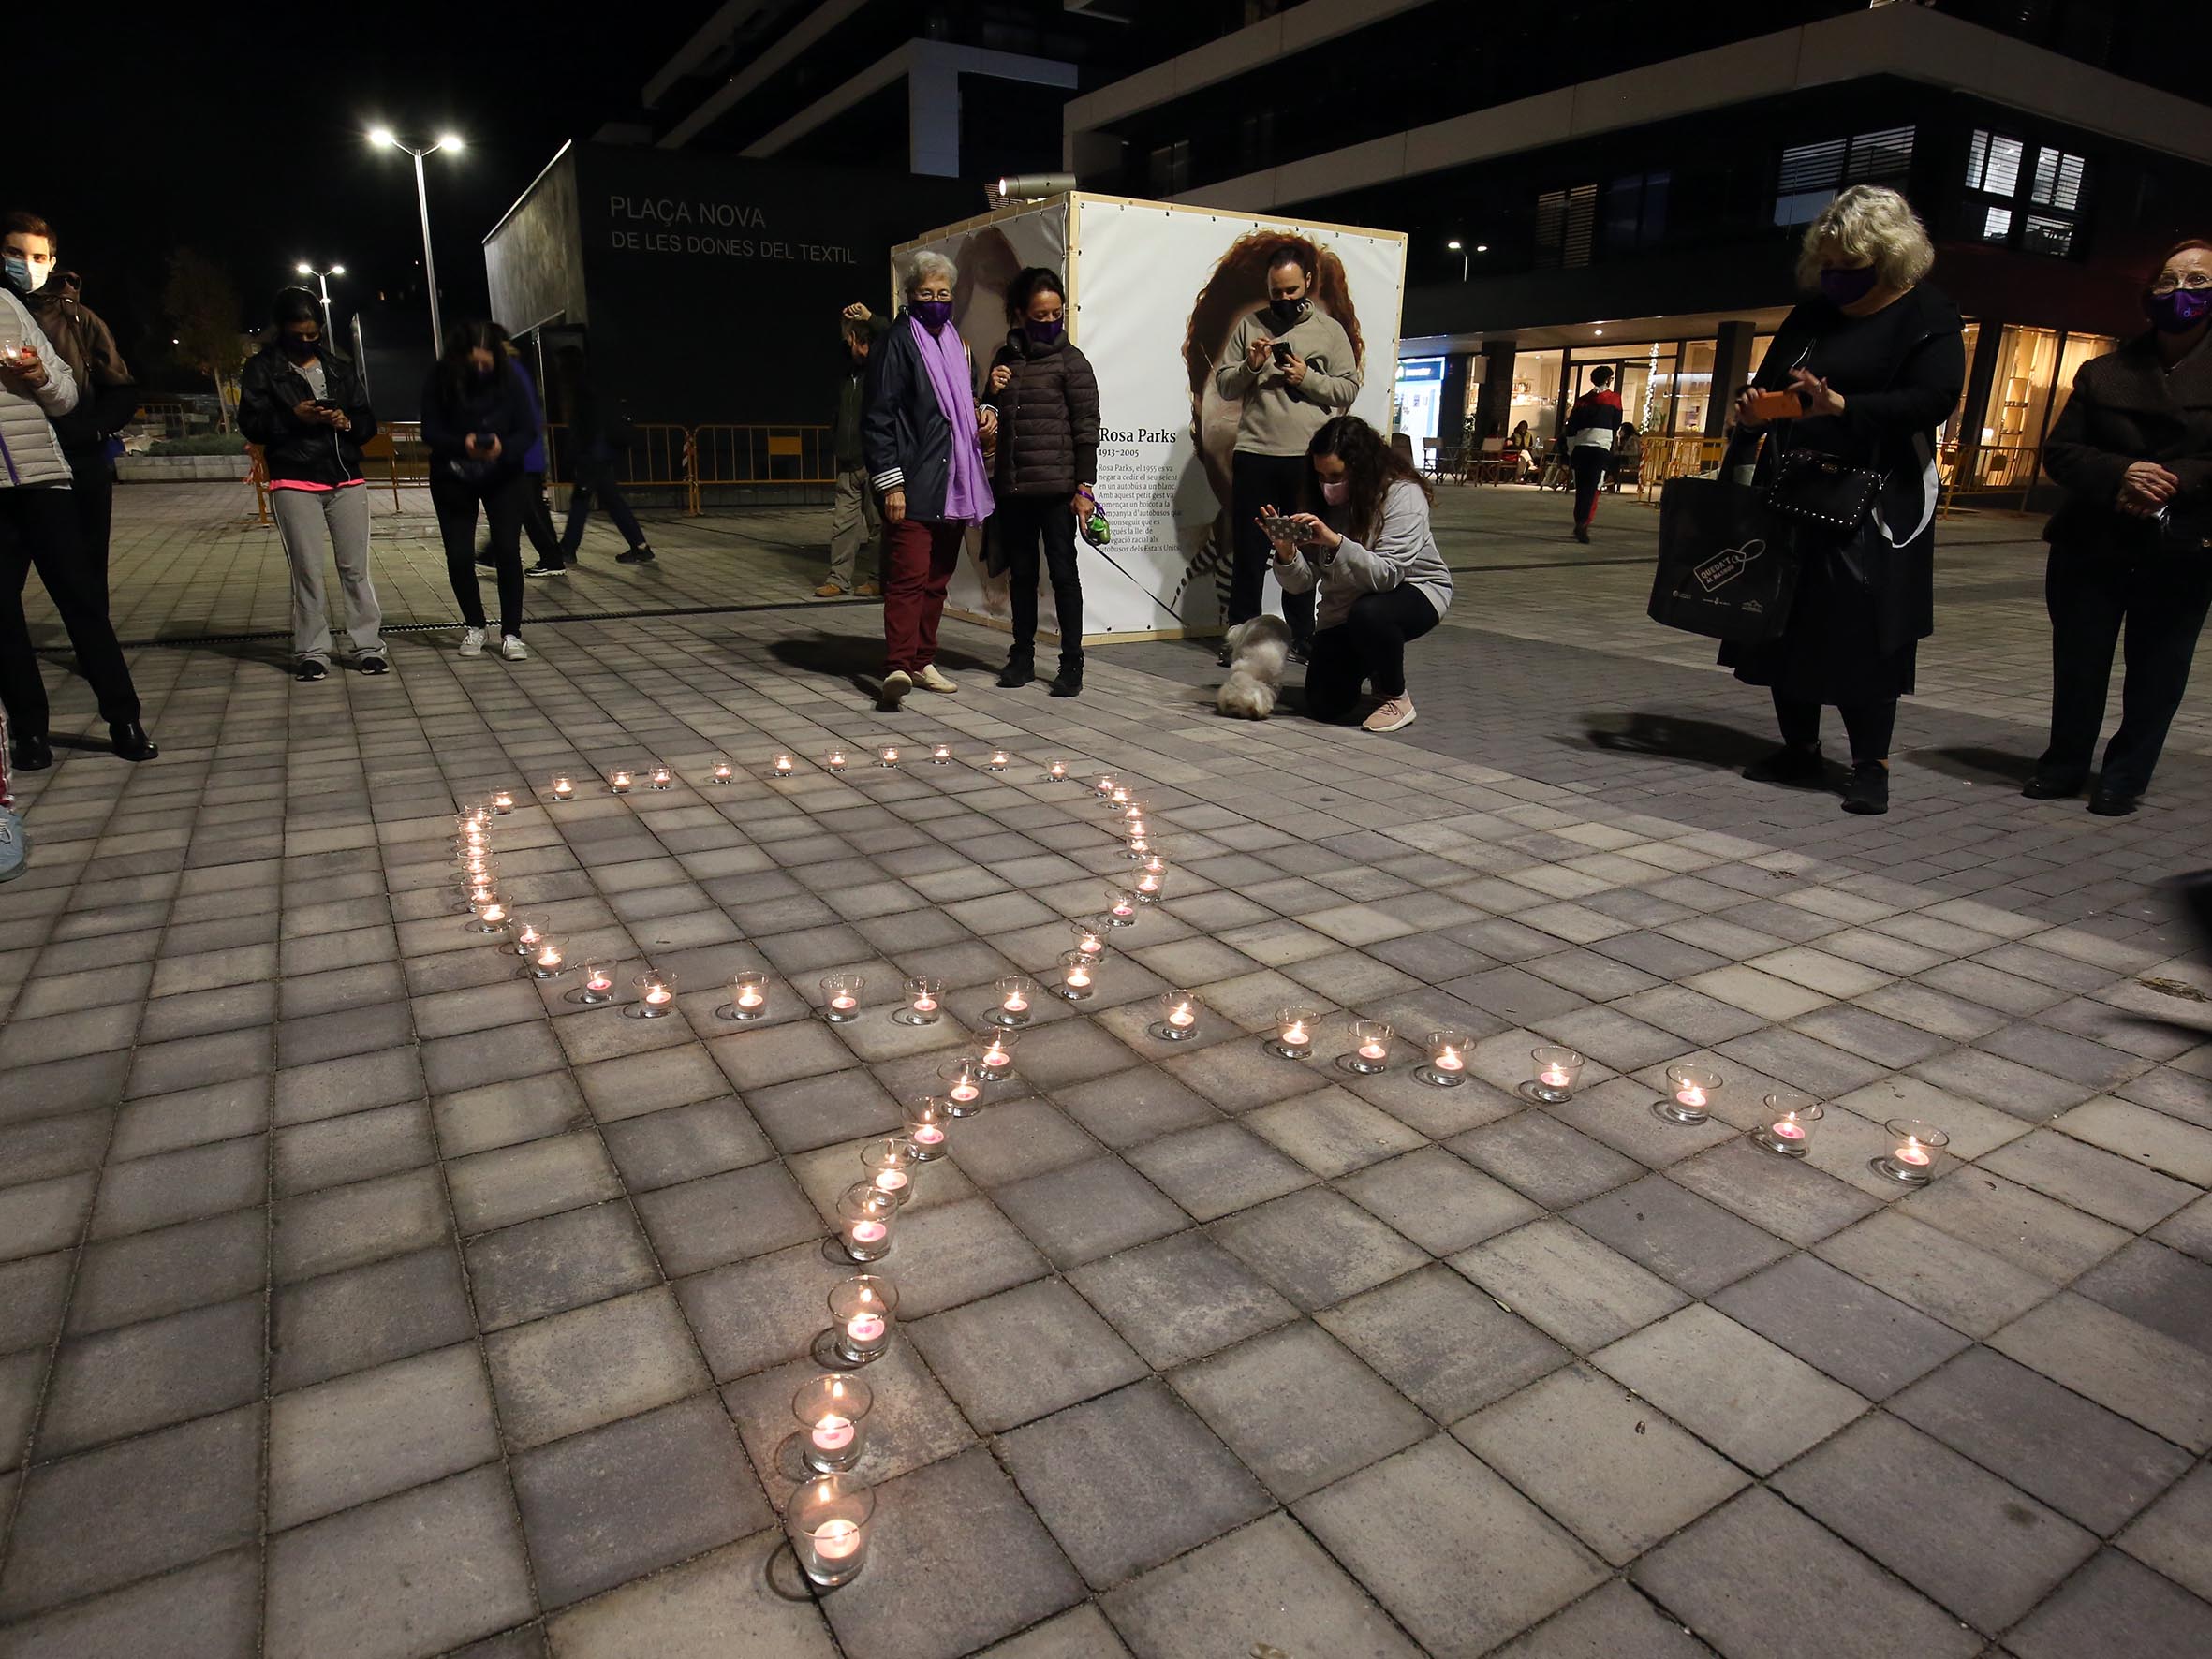 A l'acte de la plaça Nova de les Dones del Tèxtil s'hi va llegir el manifest institucional i es va fer l'encesa d'espelmes en suport a les víctimes.